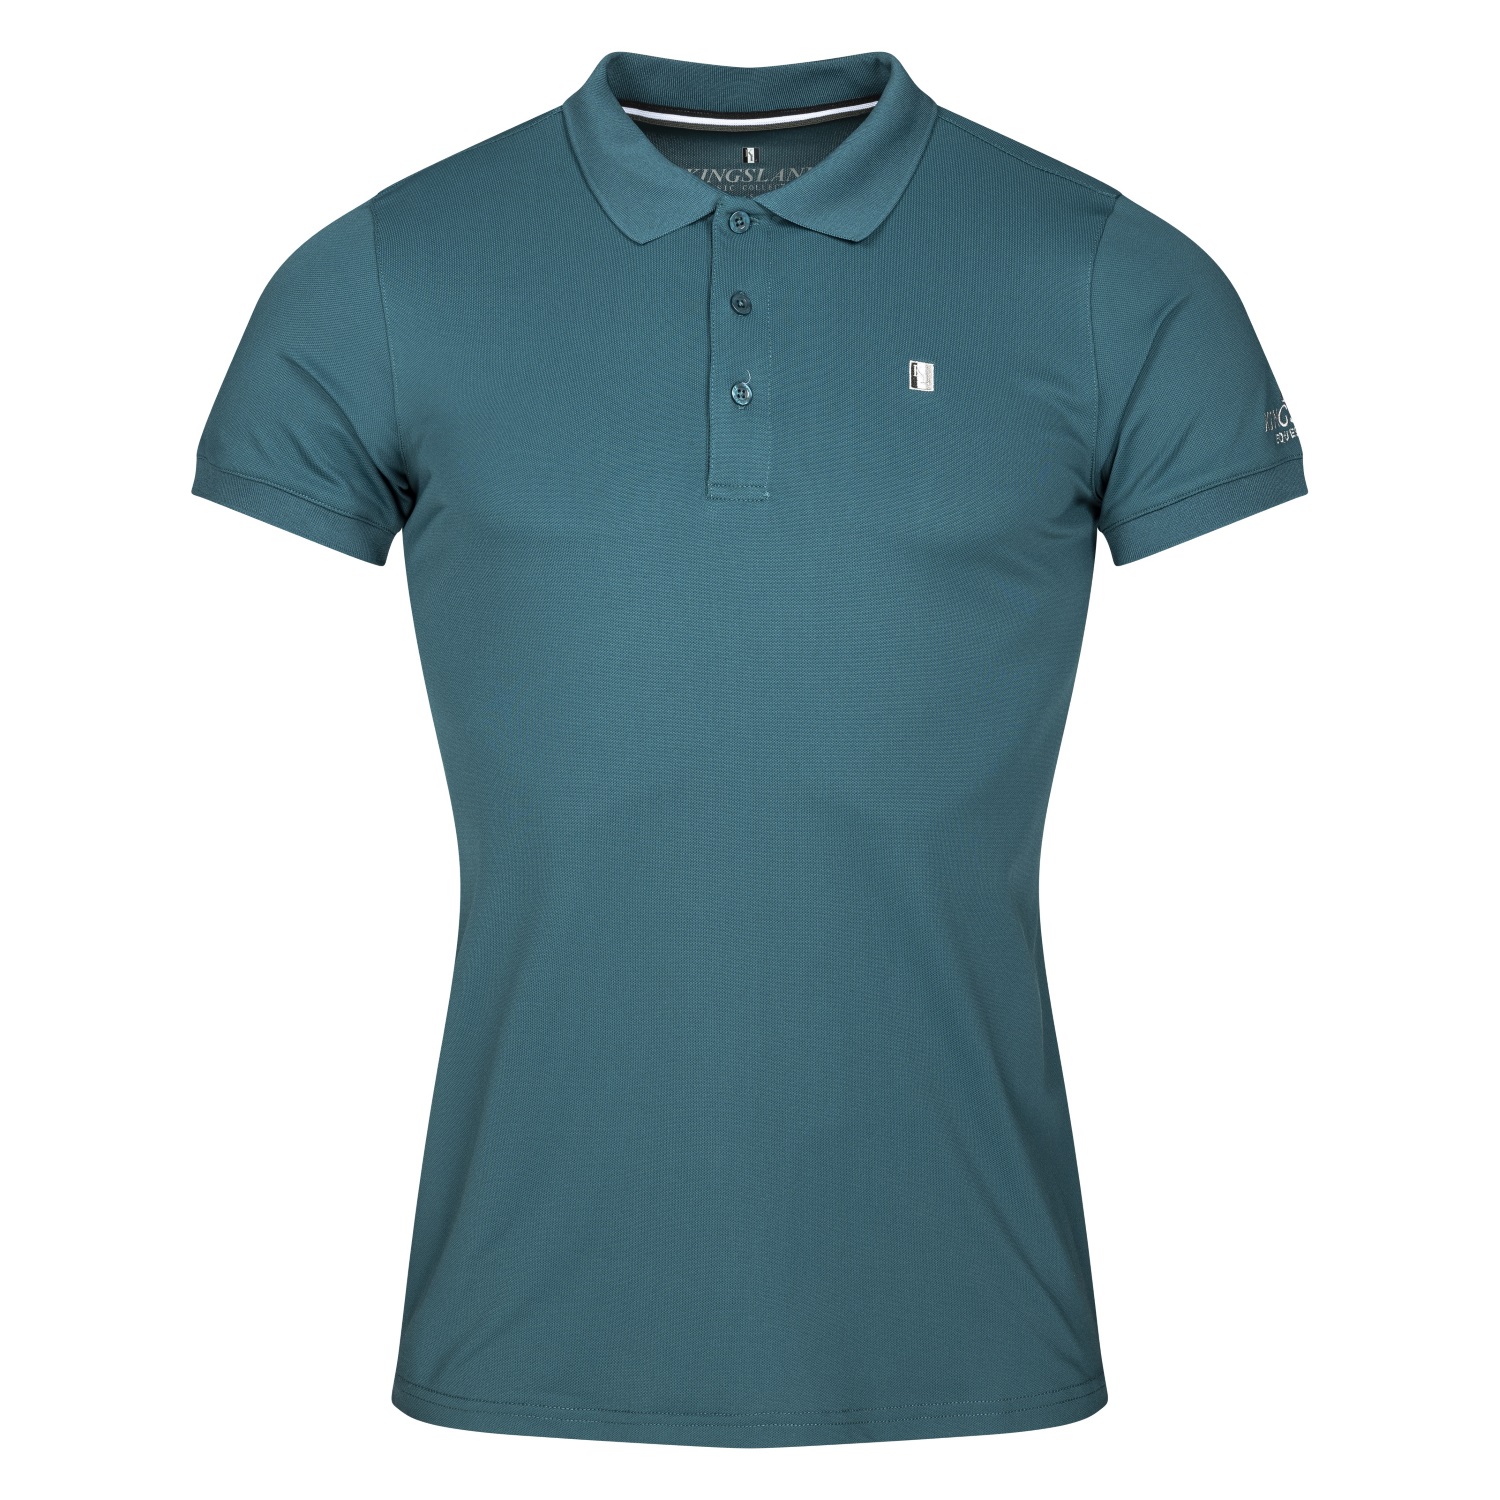 KINGSLAND Classic Limited Herren Pique Polo Shirt - green deep - M - 1